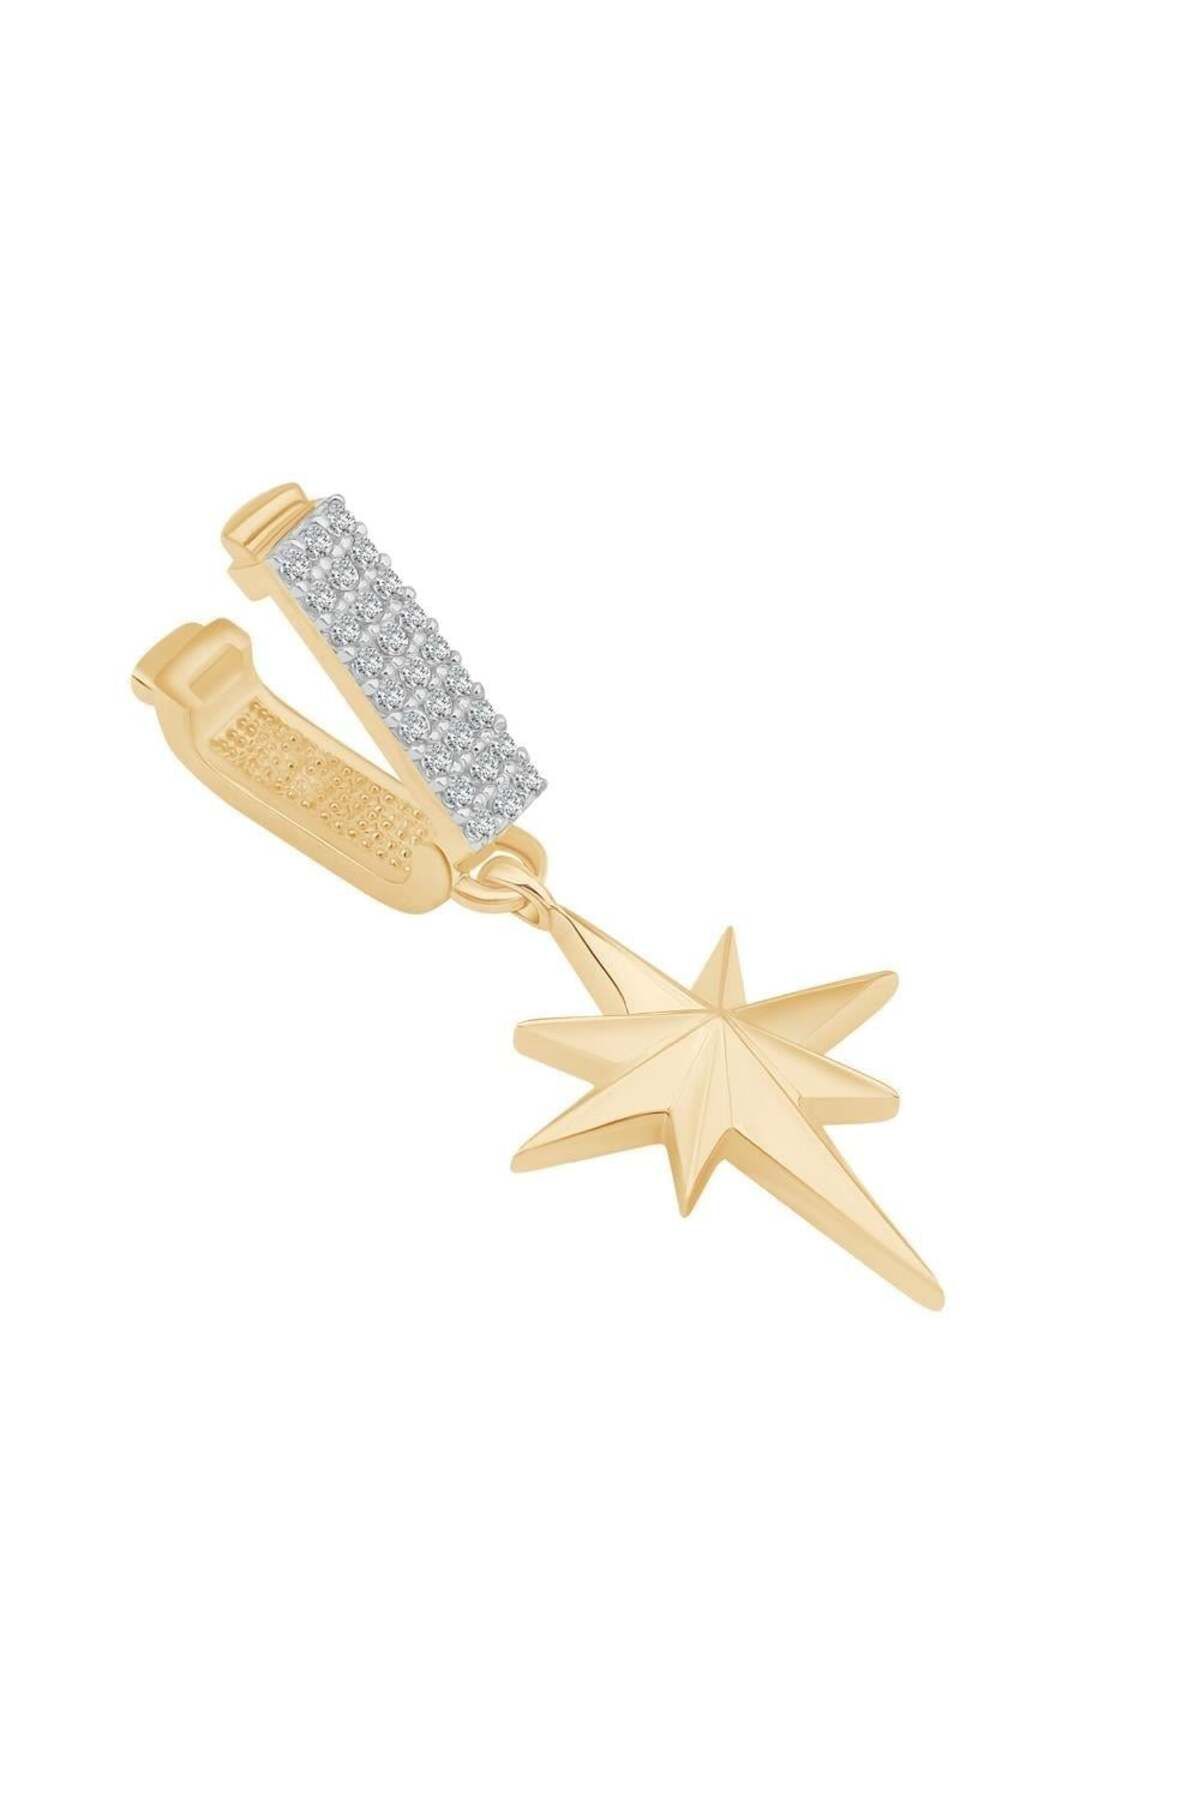 Ema Jewellery Altın Kuzey Yıldızı Sallantılı 9mm Bileklik Charm